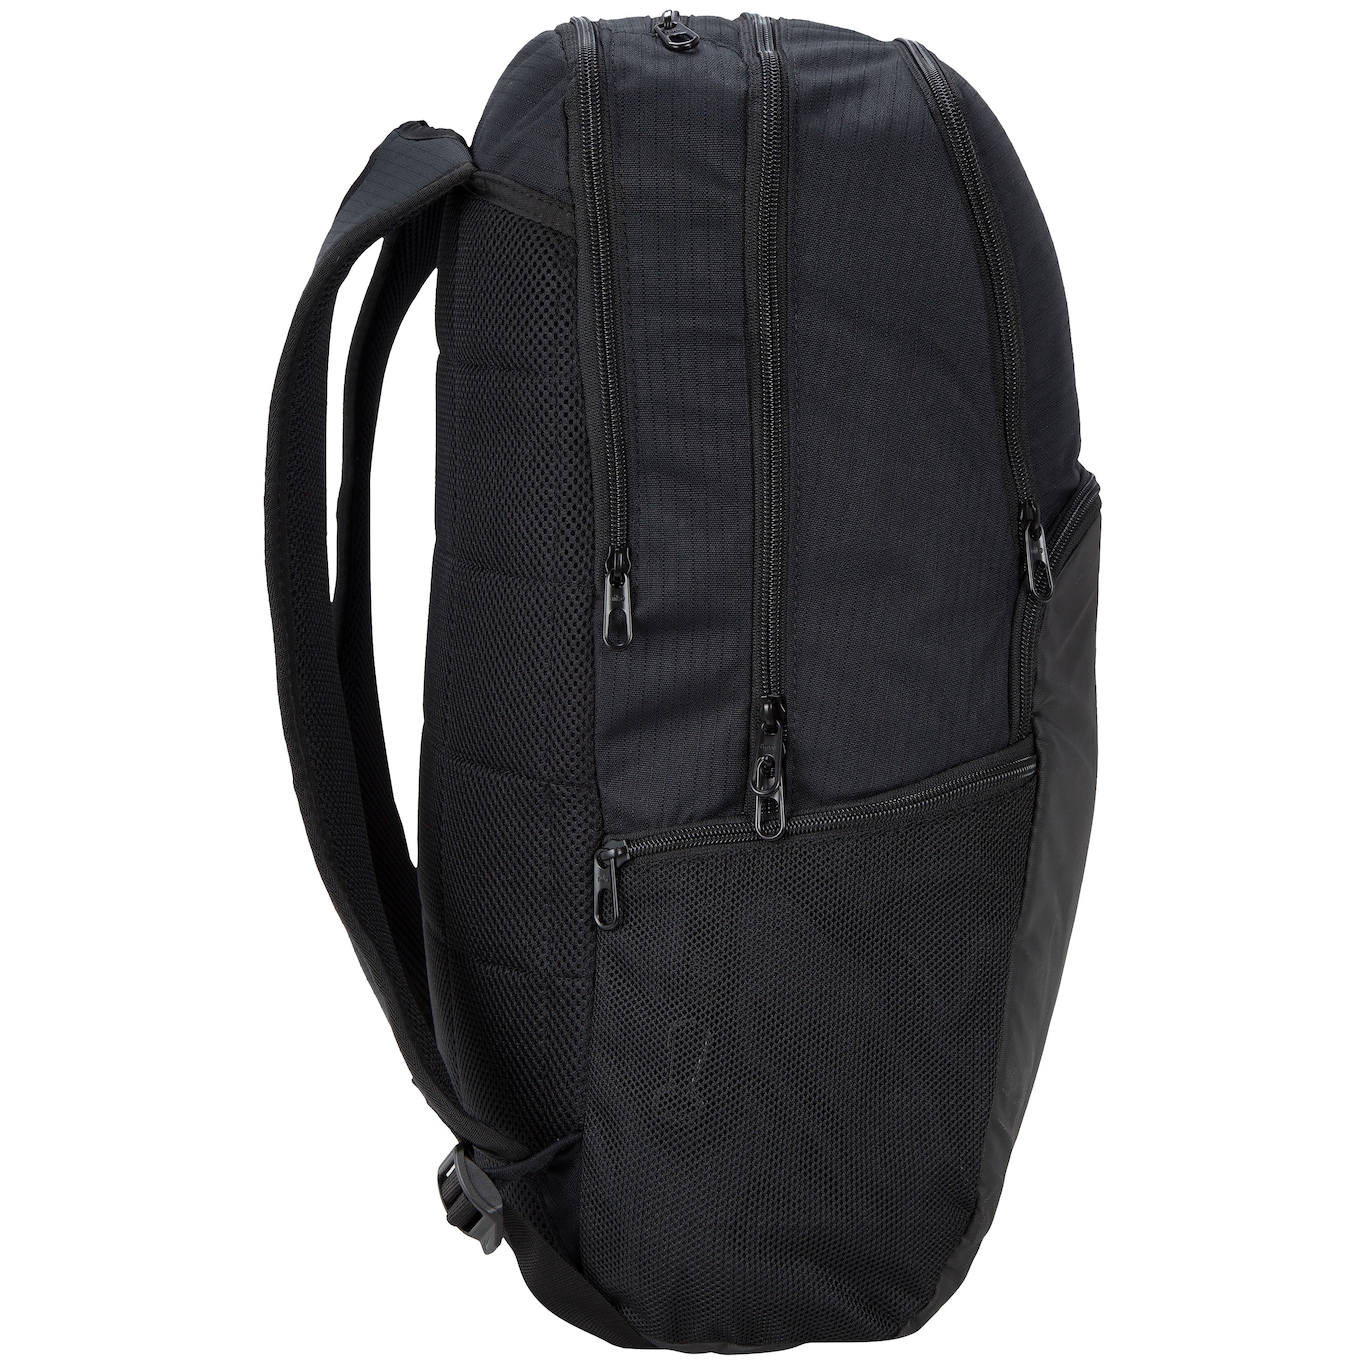 Nike Brasilia XL 9.0 30L Backpack Black